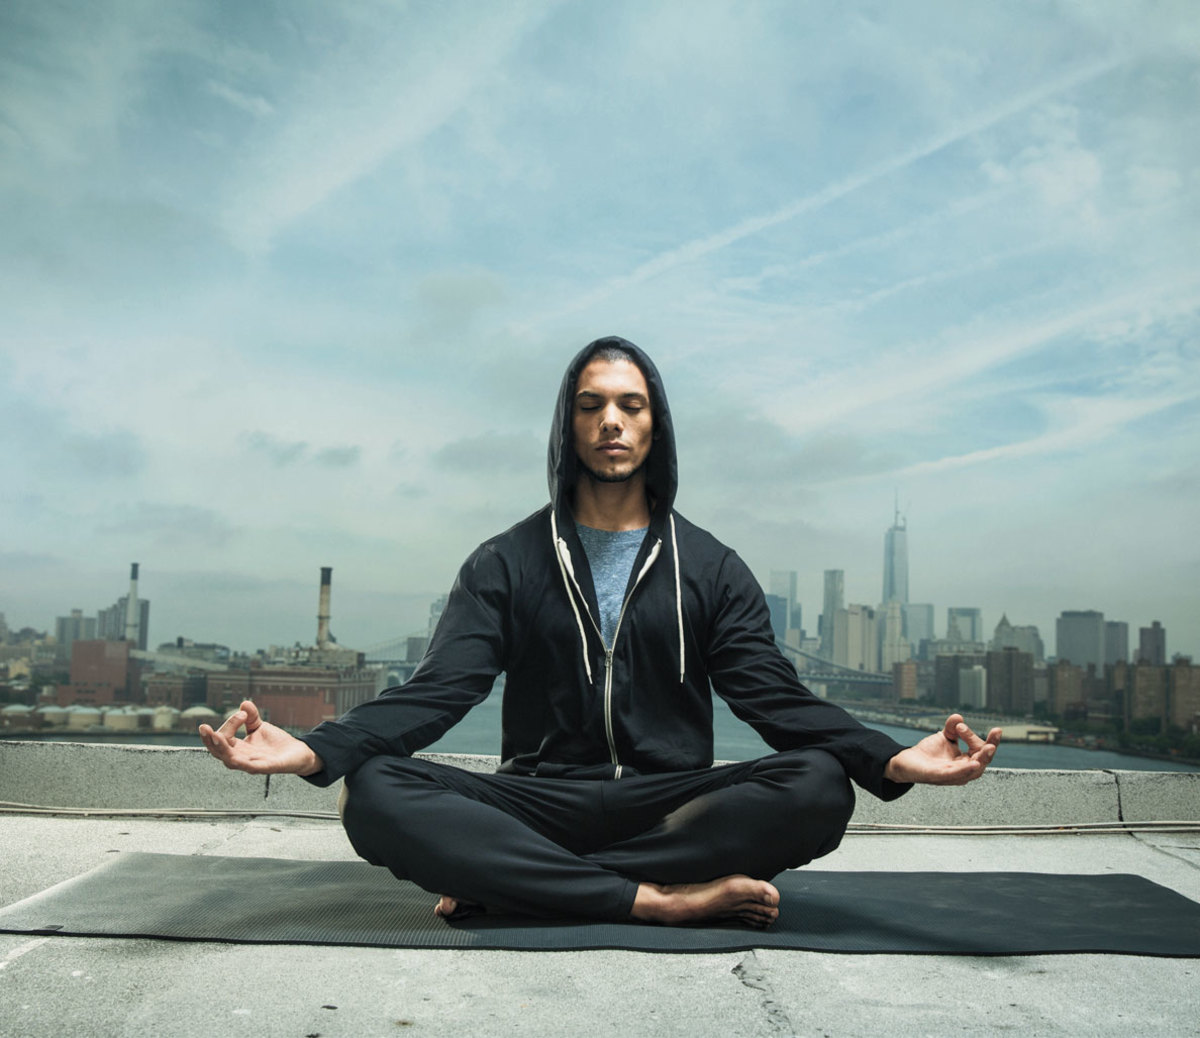 Yoga for Men: A Beginner's Guide